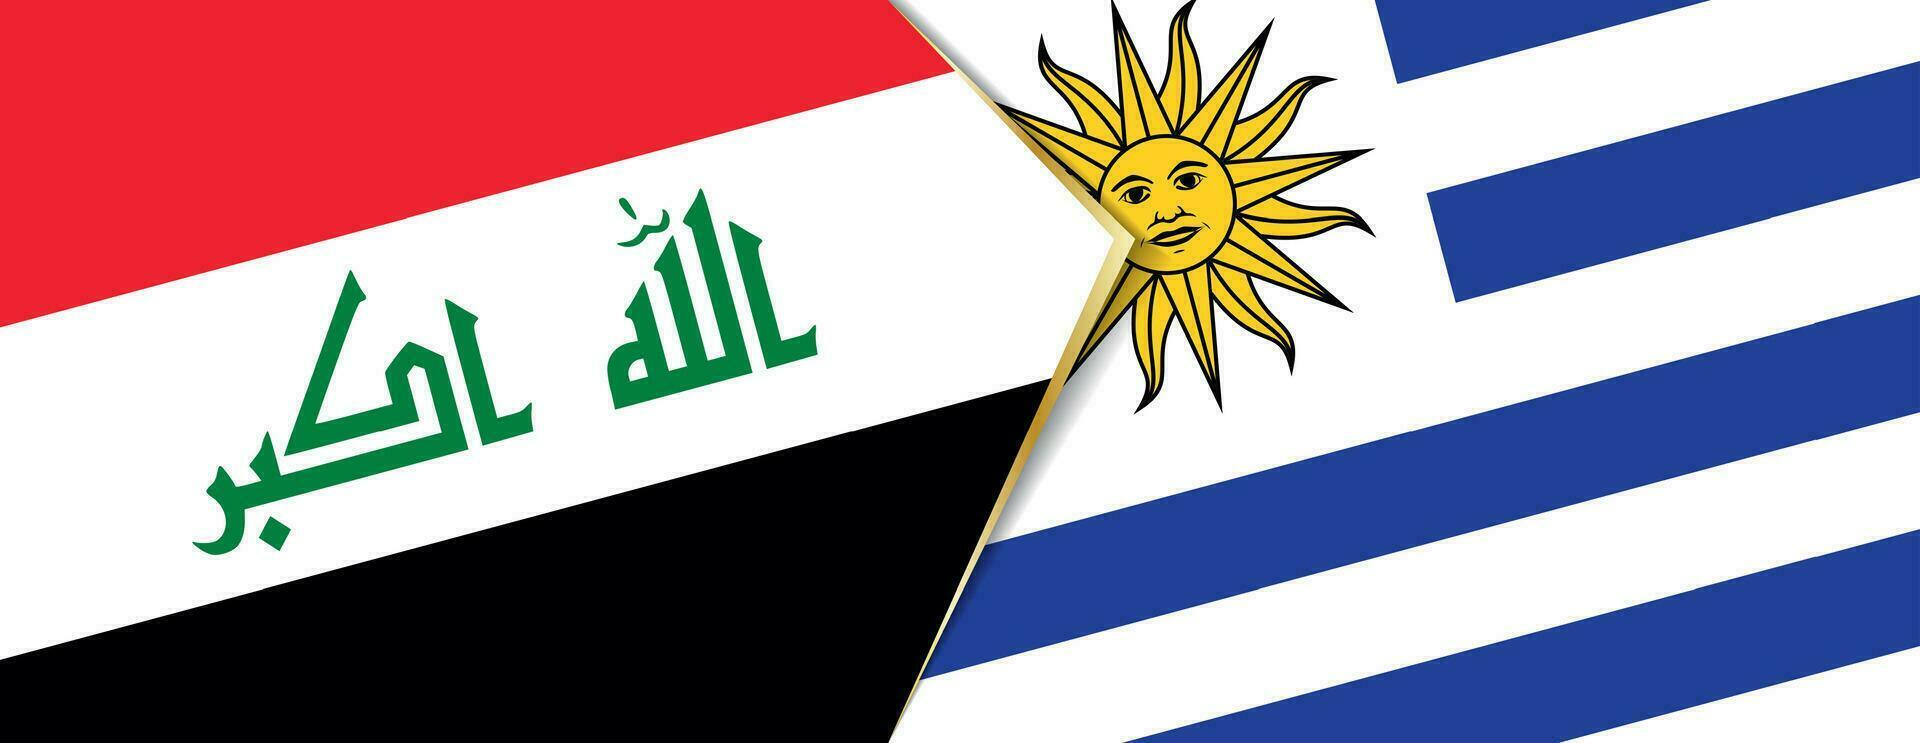 Irak y Uruguay banderas, dos vector banderas